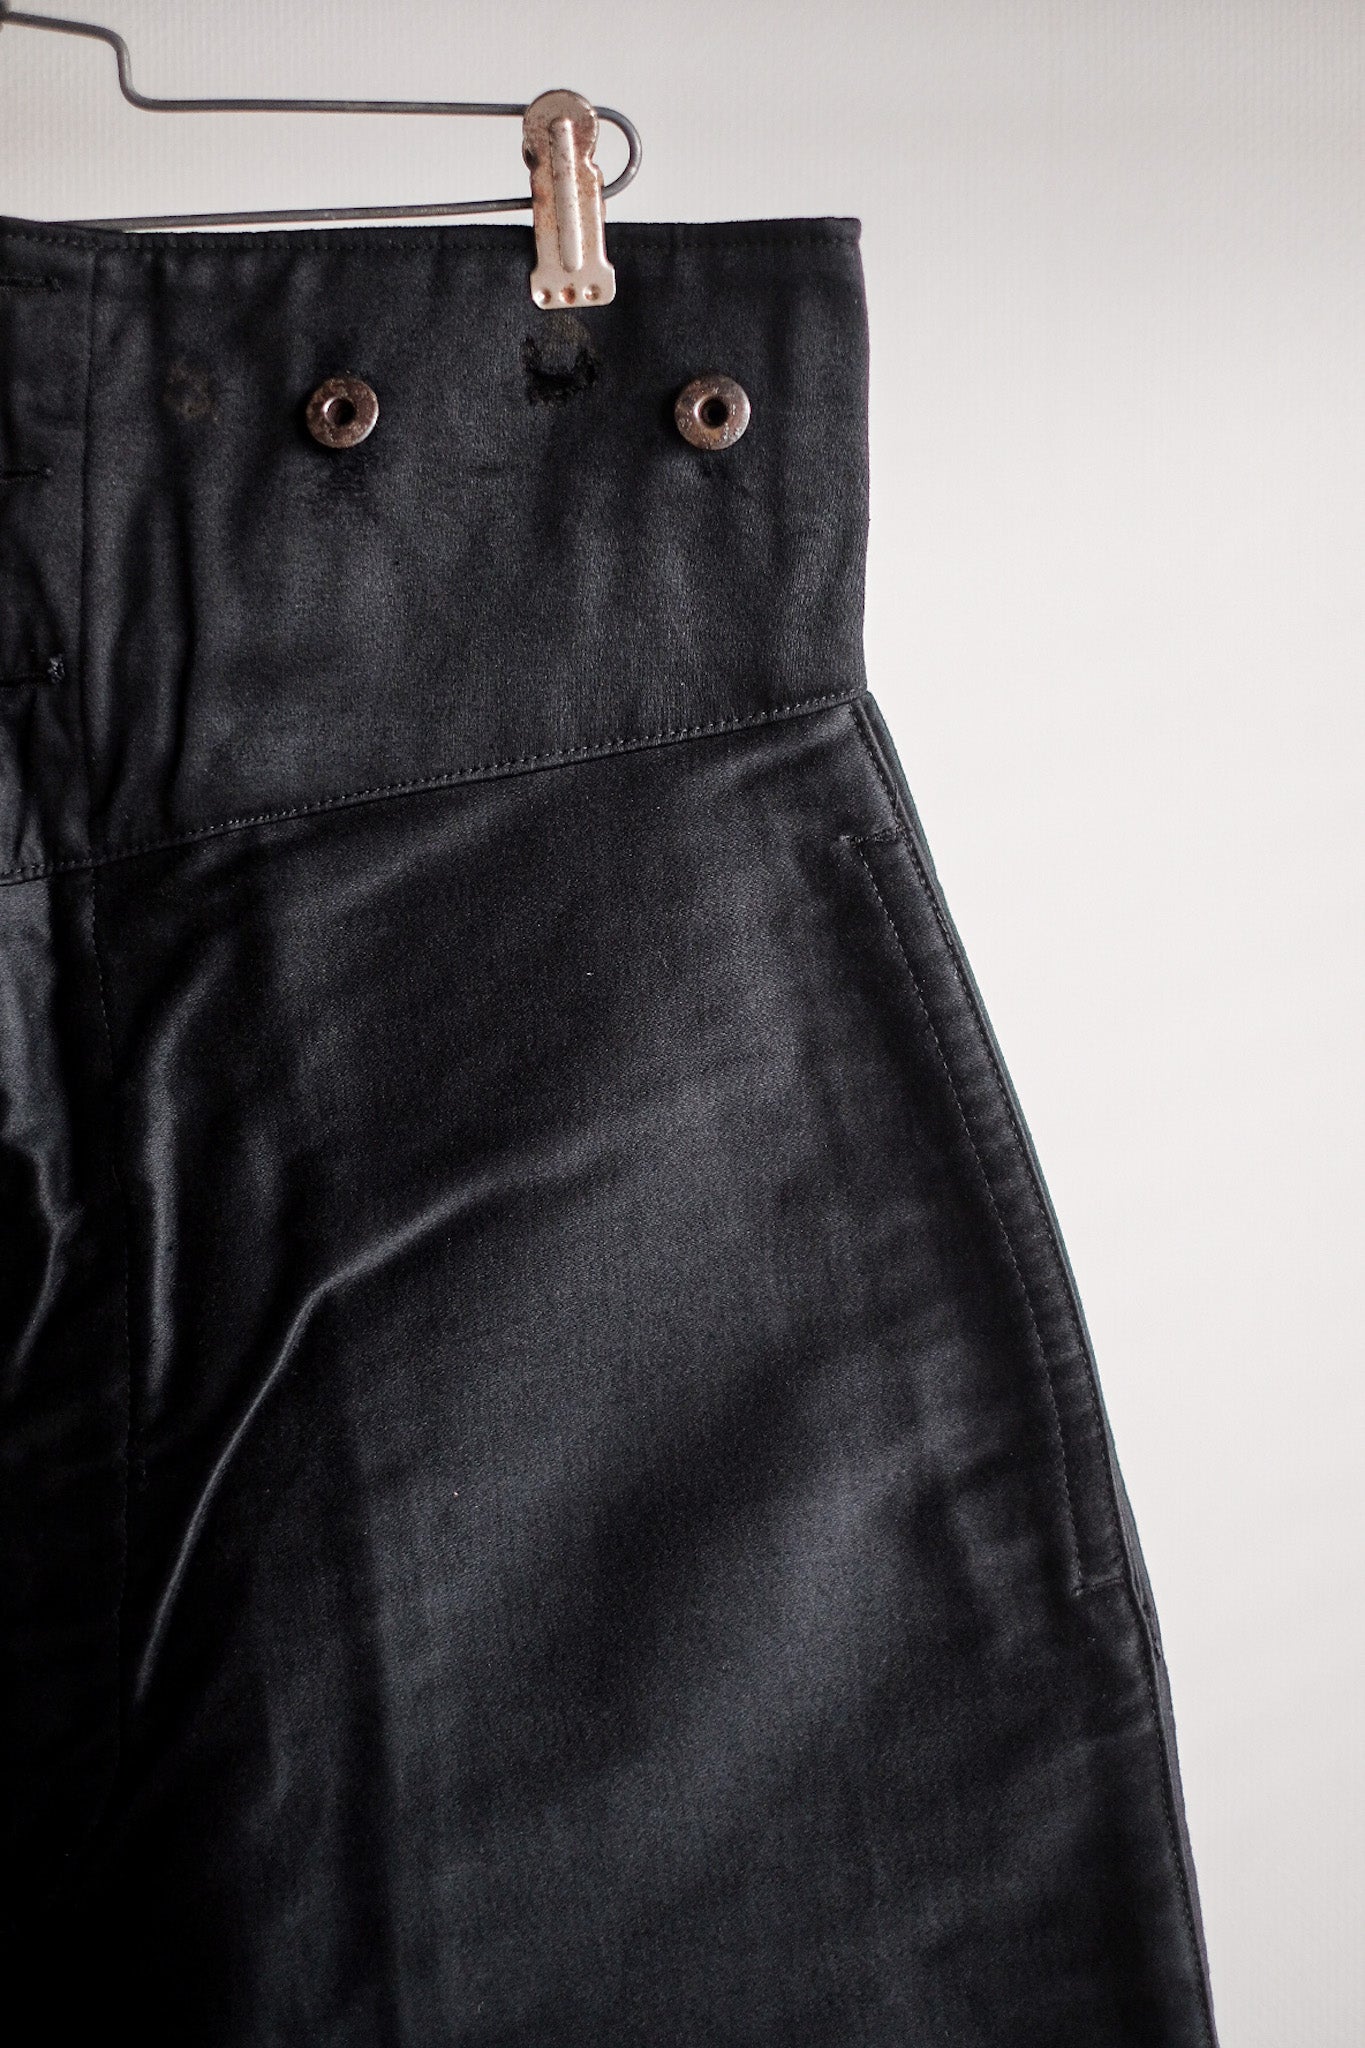 [~ 30's] Pantalon de travail de moleskin noirs vintage français "Le Mont St. Michel" "Stock mort"